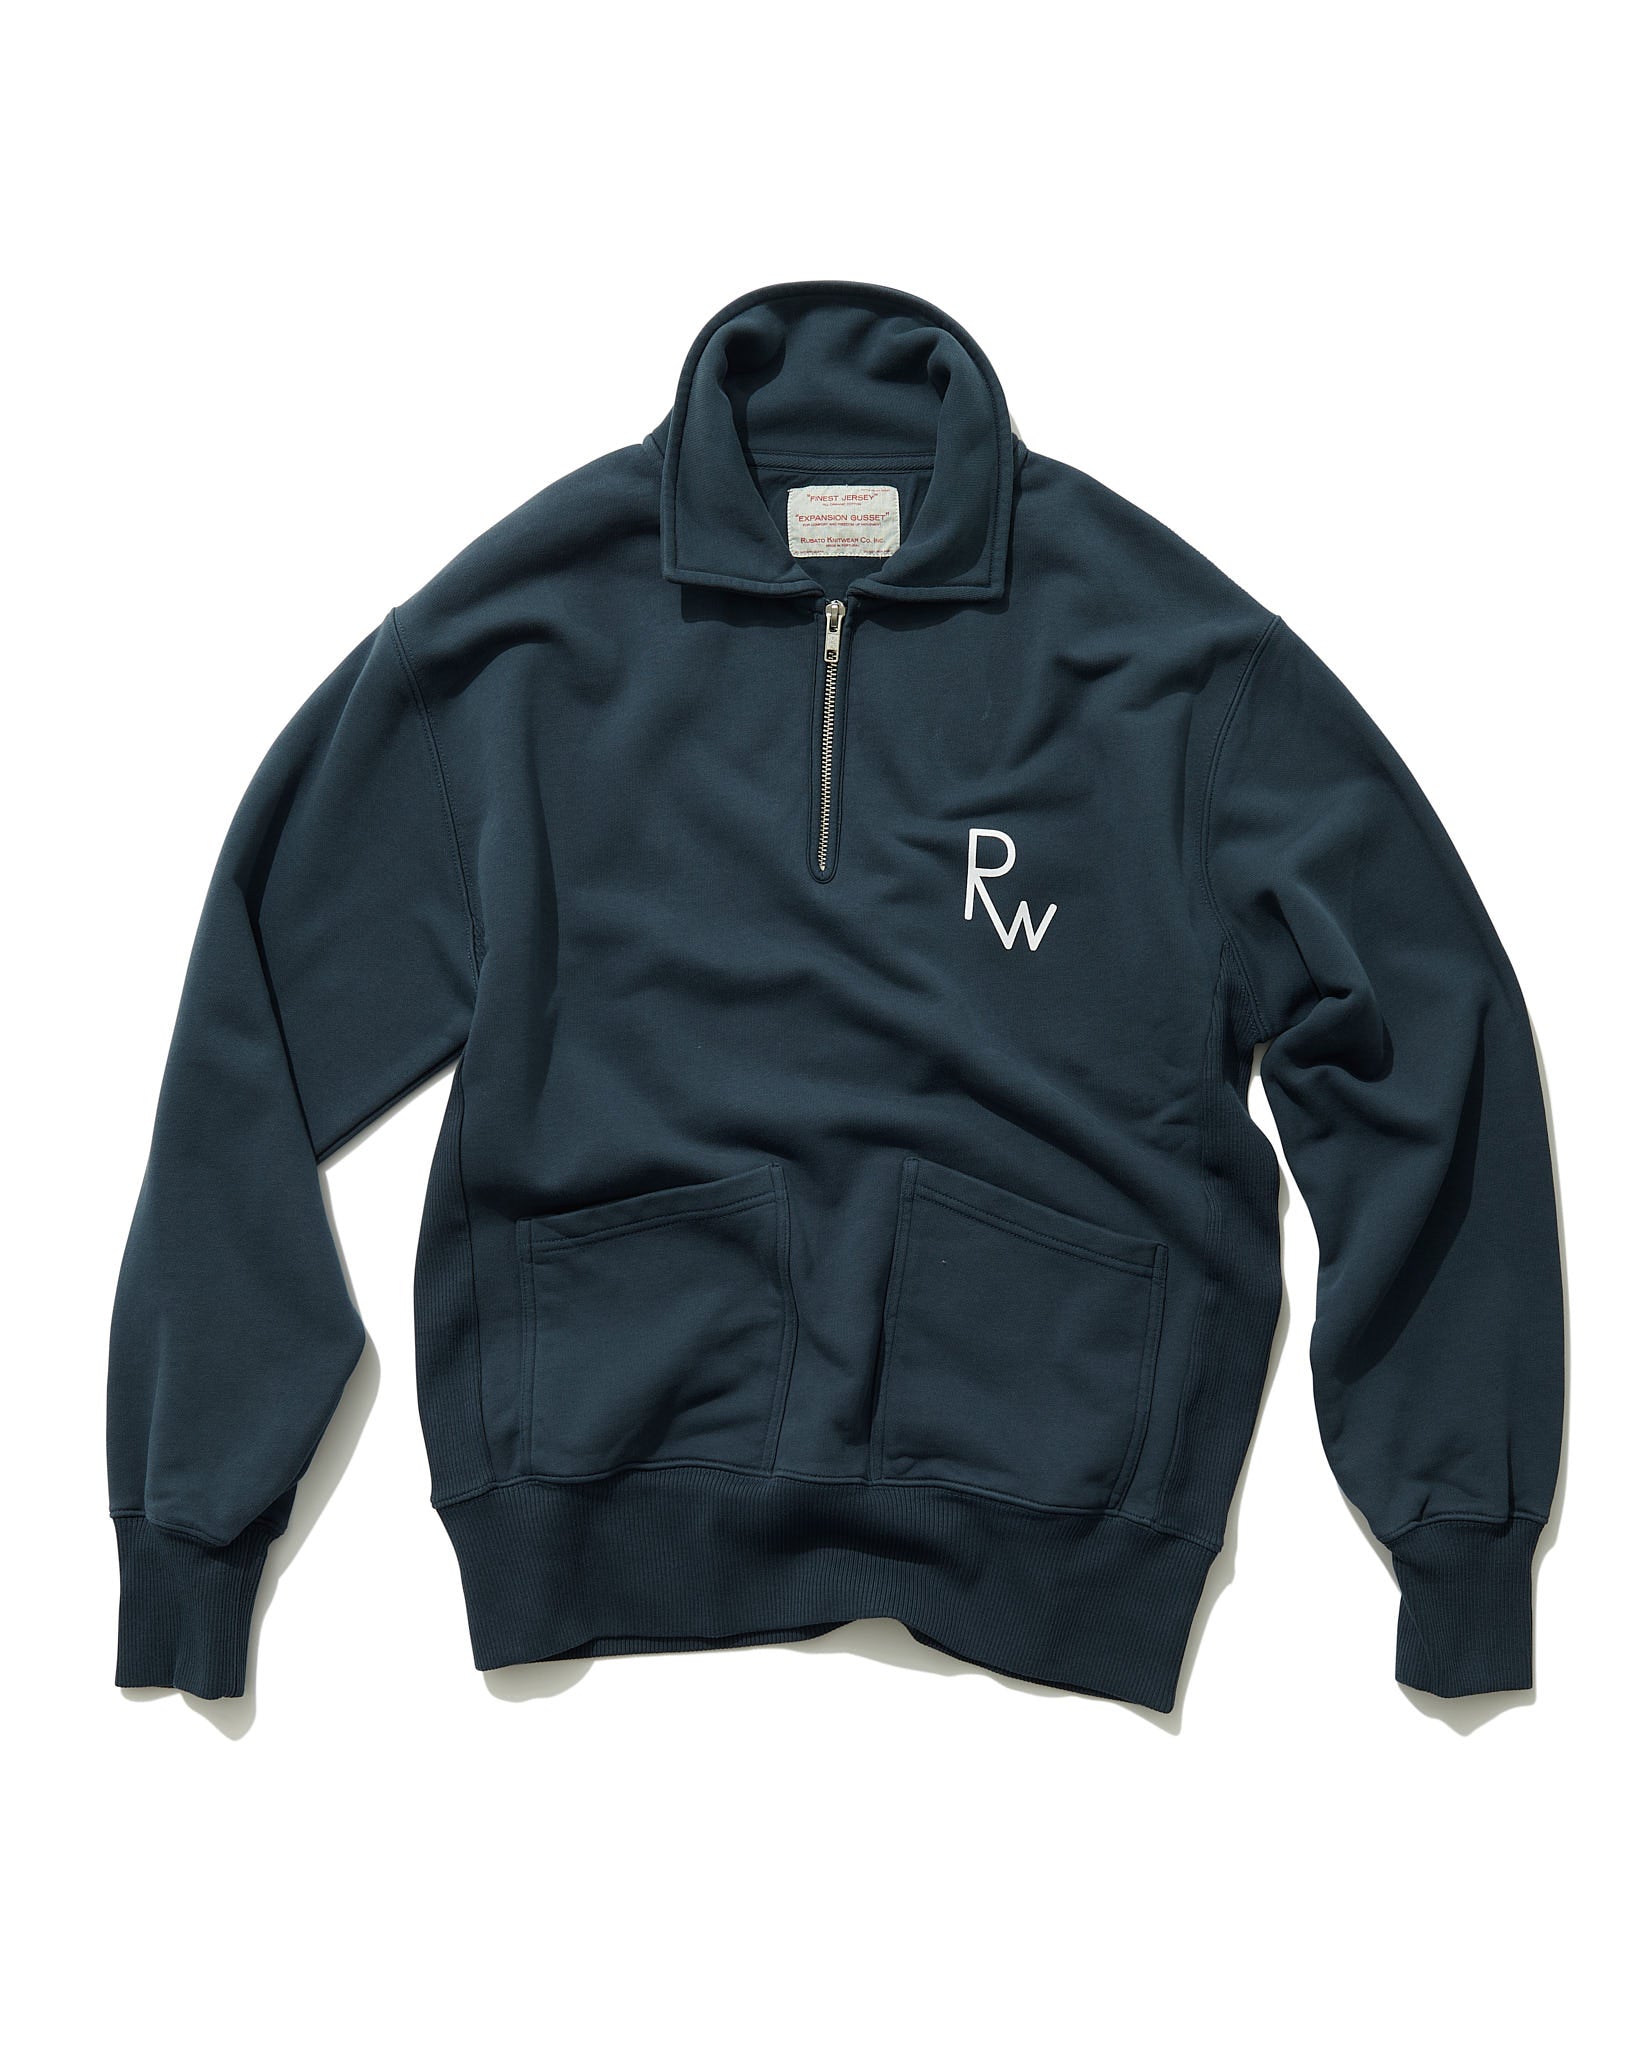 "Rubato Ware" Sweatshirt in Navy